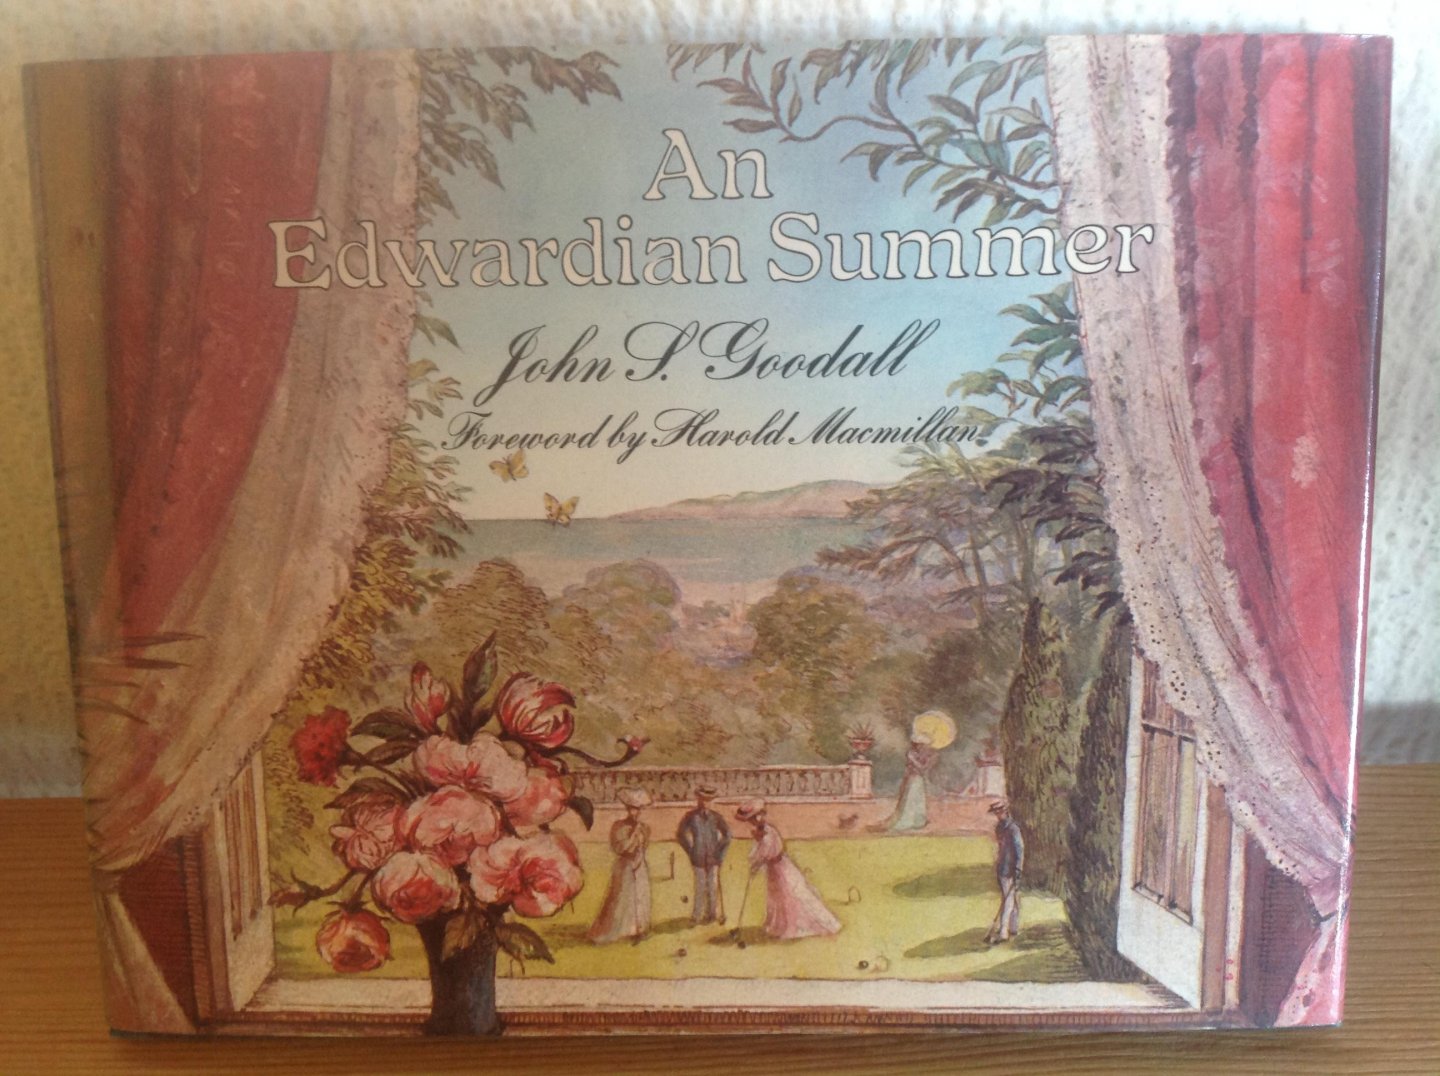 John Goodall - An Edwardian Summer